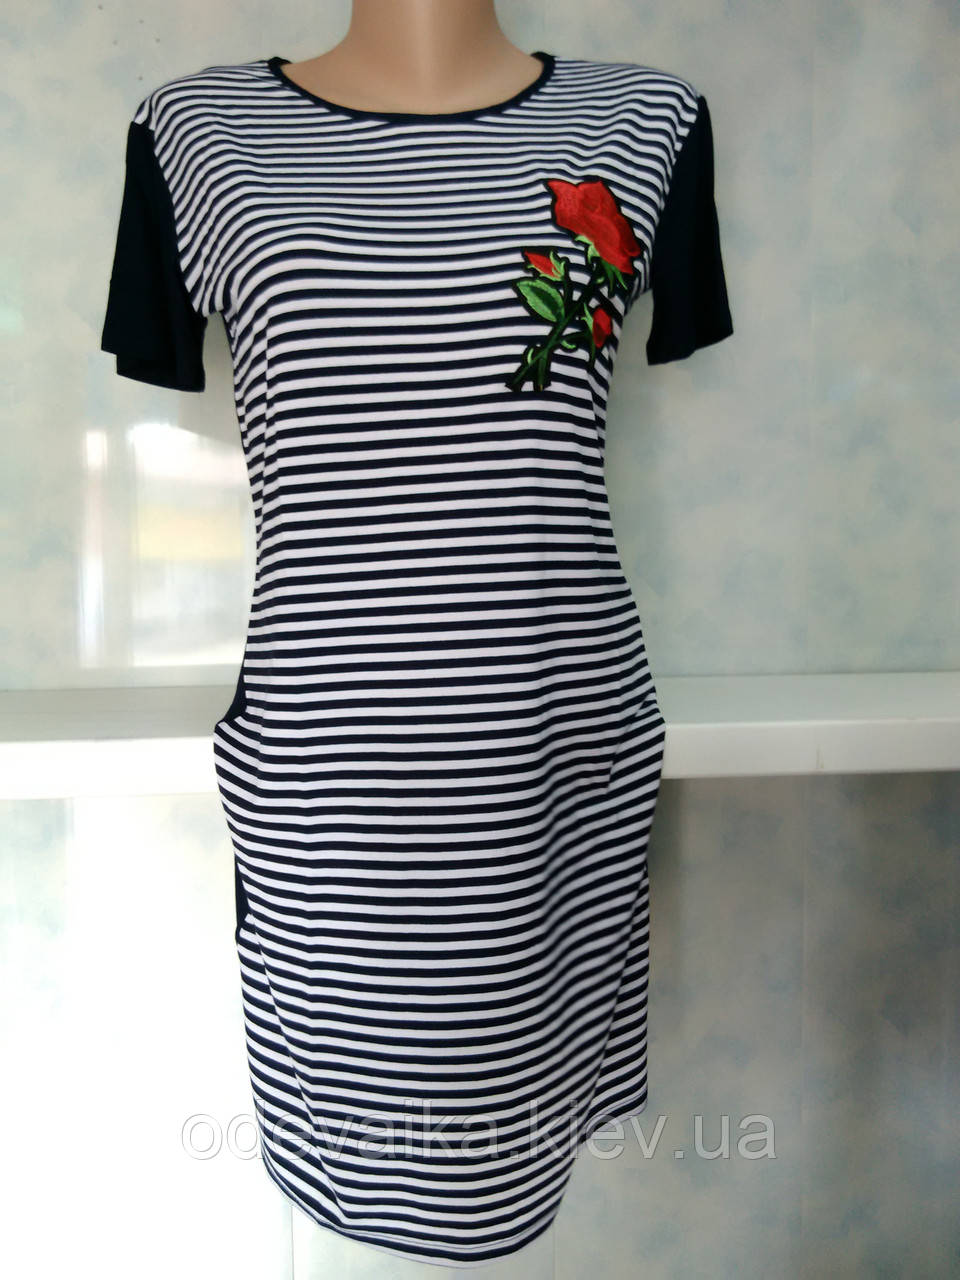 Жіноче плаття з літнього трикотажу в смужку з квіткою 44/46 розміру